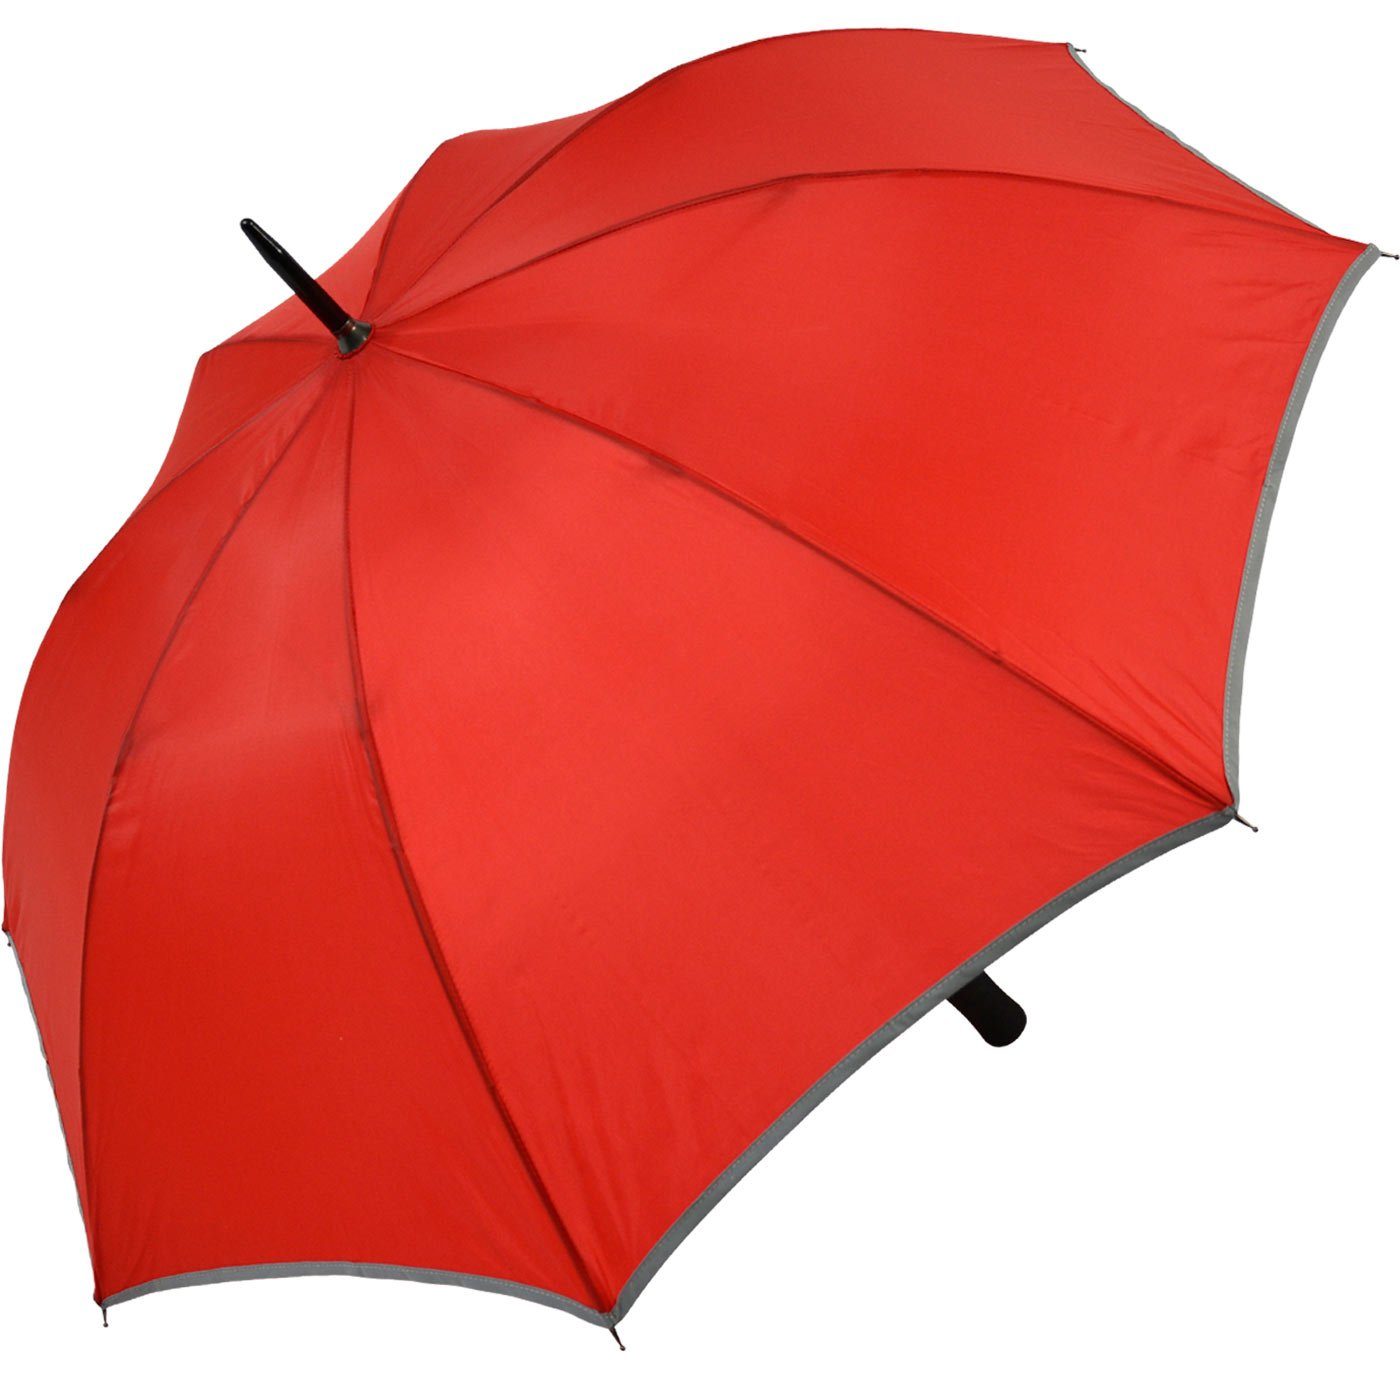 Stockregenschirm Falcone® reflektierende Impliva Fiberglas Sicherheitsschirm reflex Borte, Reflex leichter rot